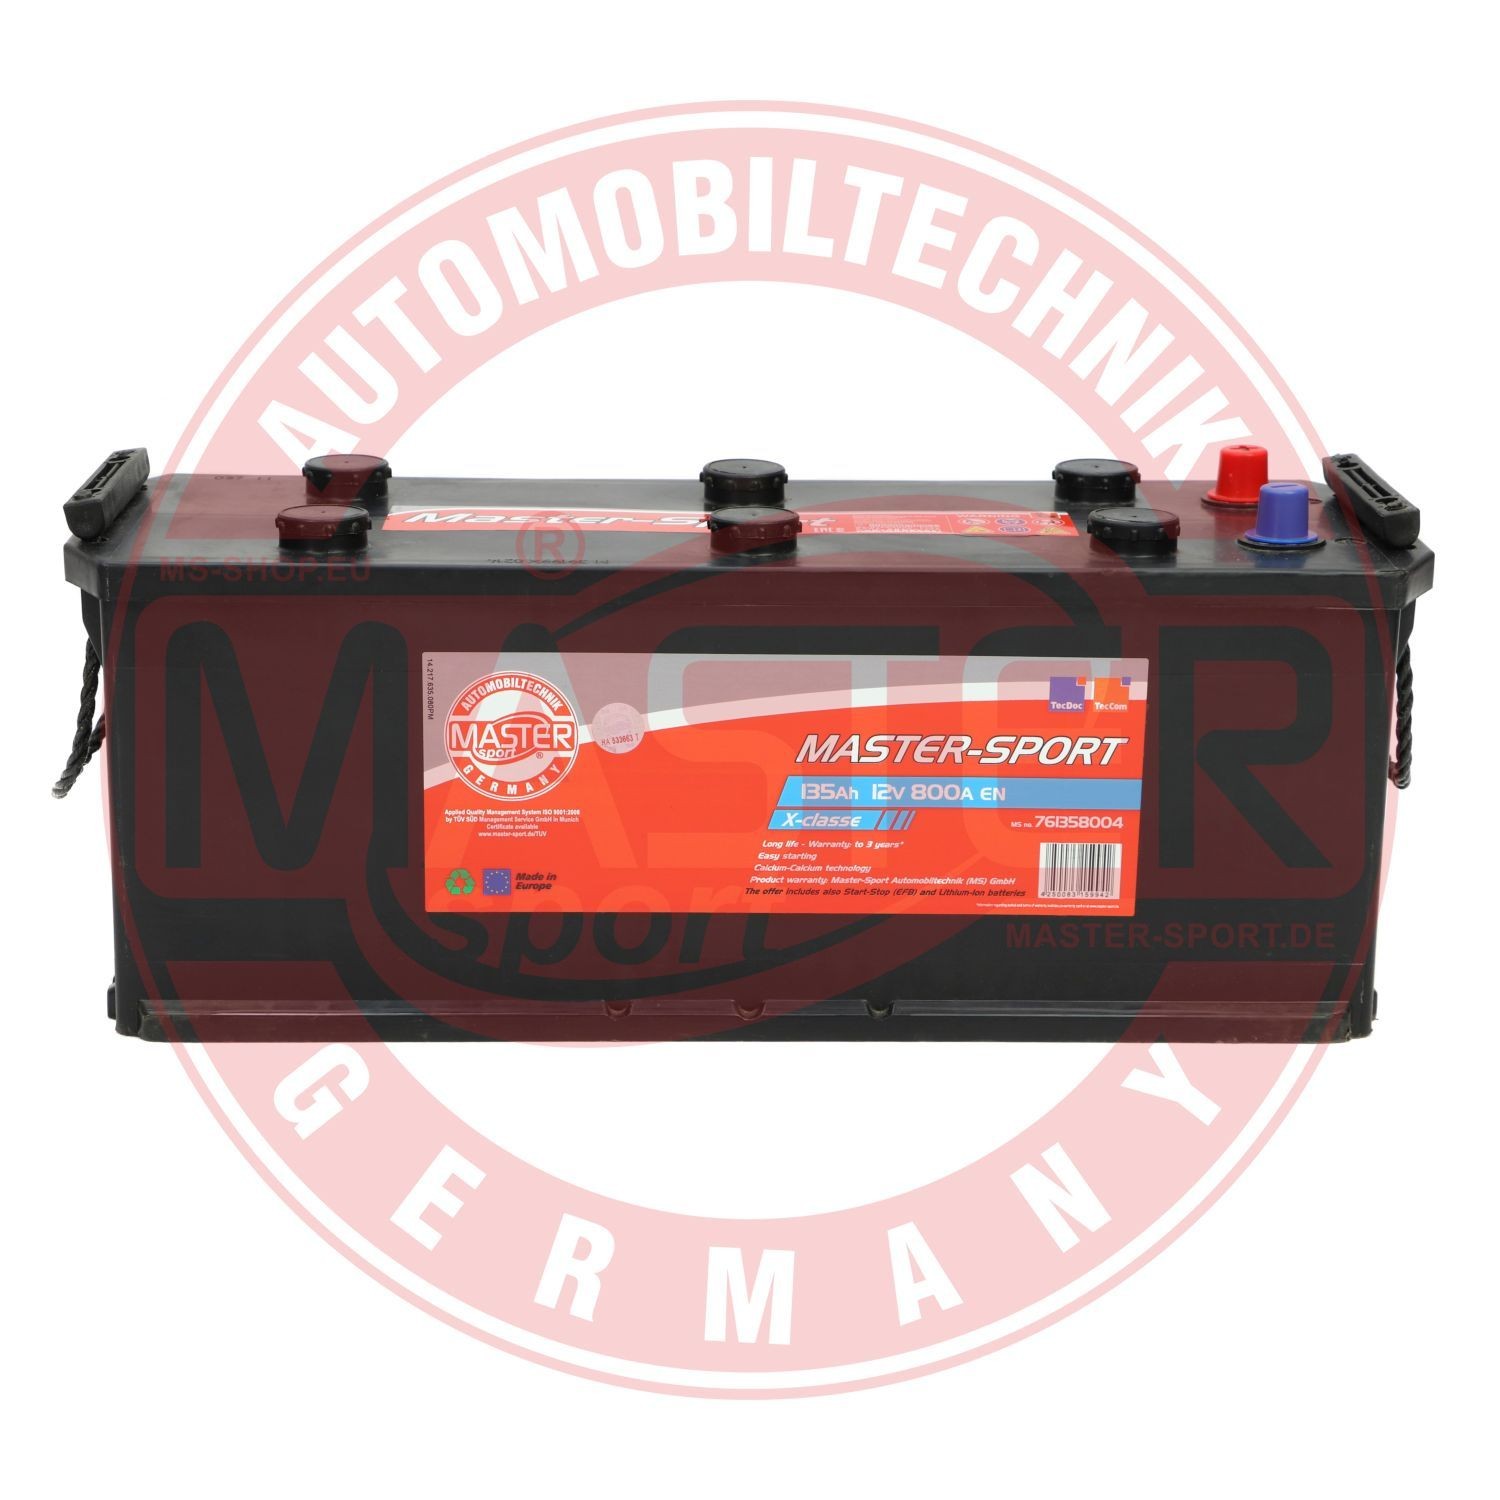 761358004 MASTER-SPORT Batterie für RENAULT TRUCKS online bestellen